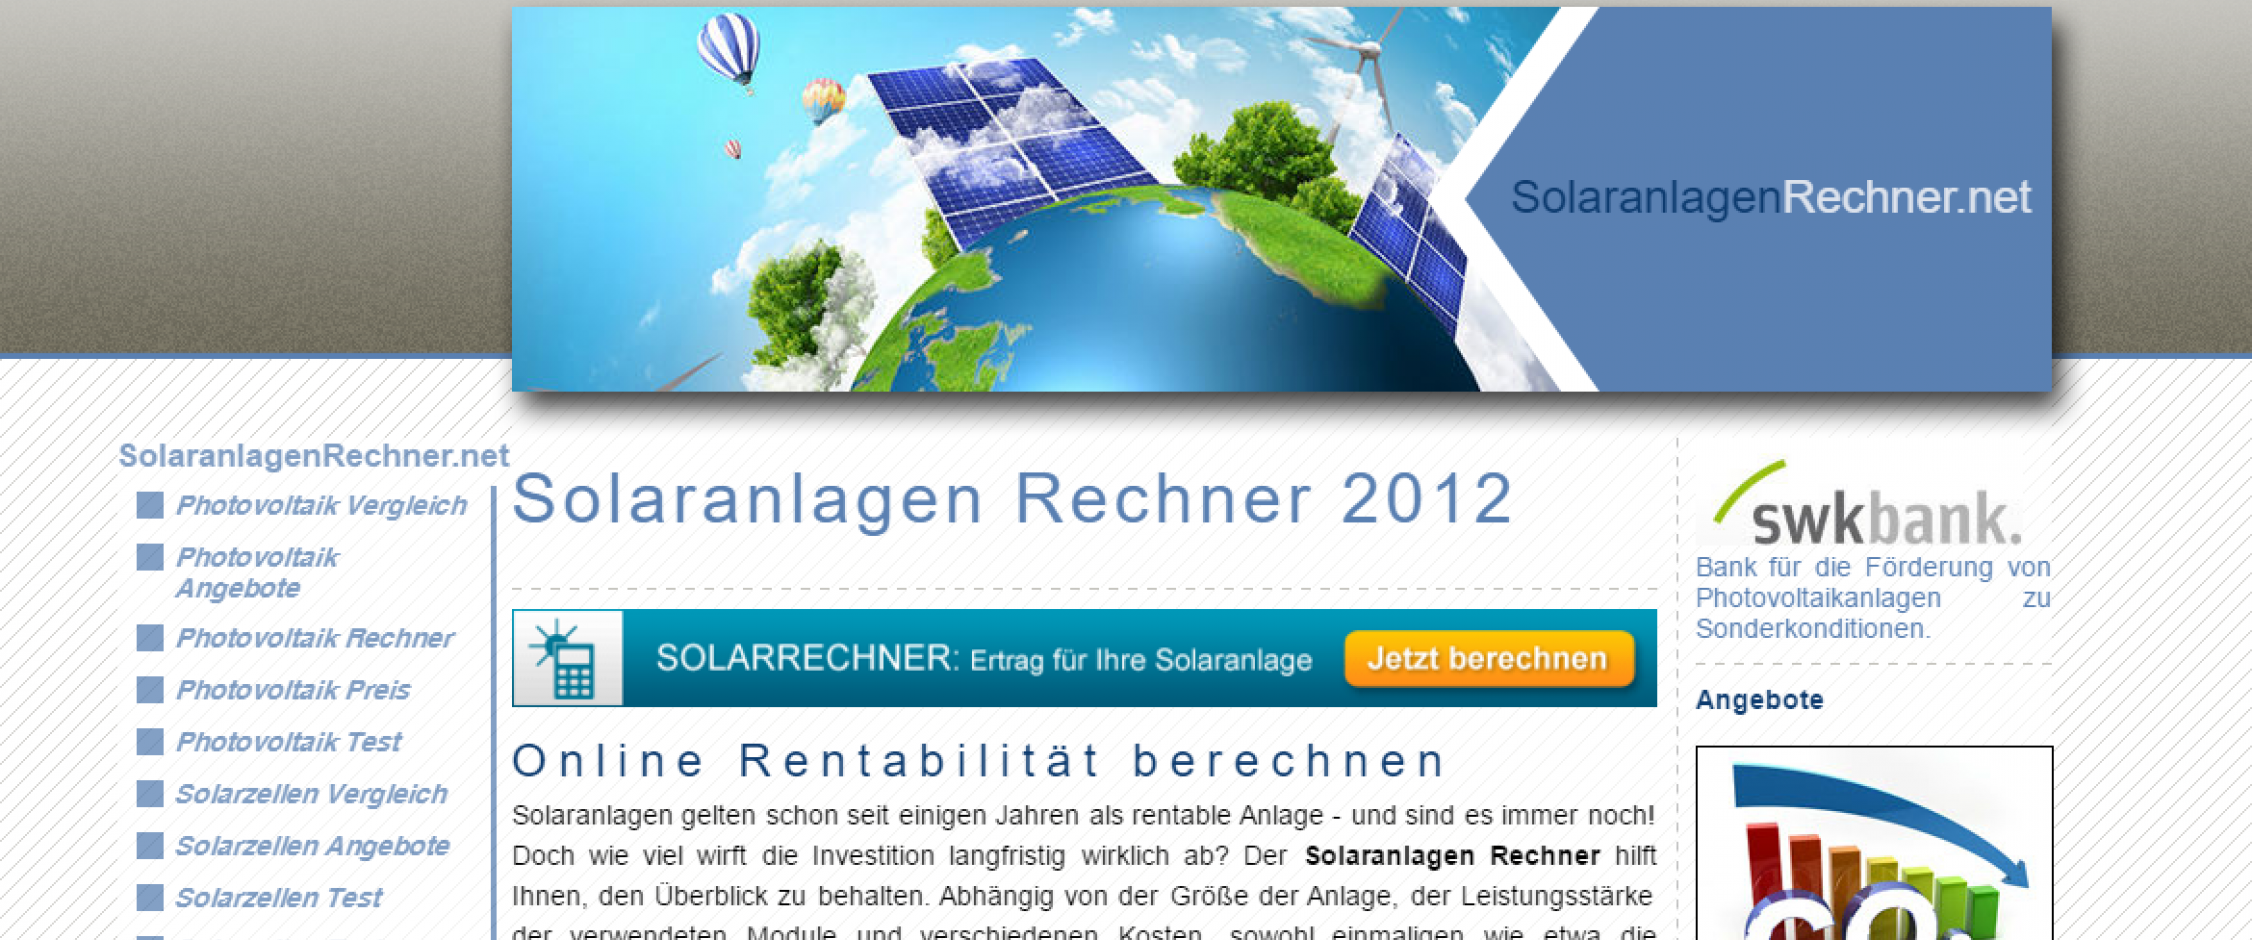 solaranlagenrechner.net - Screenshot #1